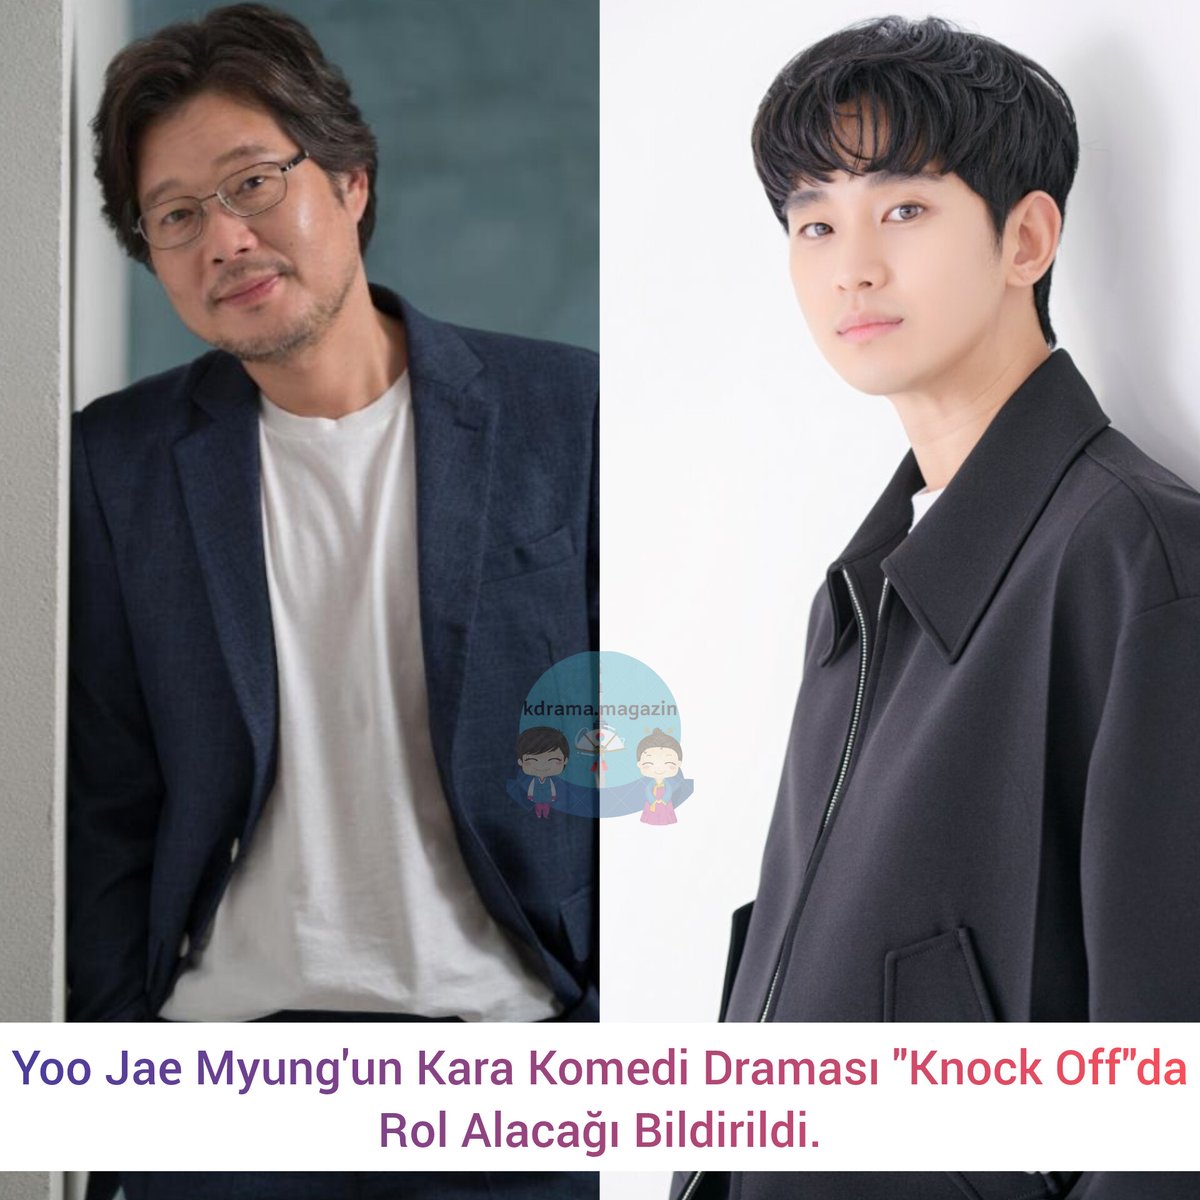 #YooJaeMyung'un Kara Komedi Draması #KnockOff'da Rol Alacağı Bildirildi.